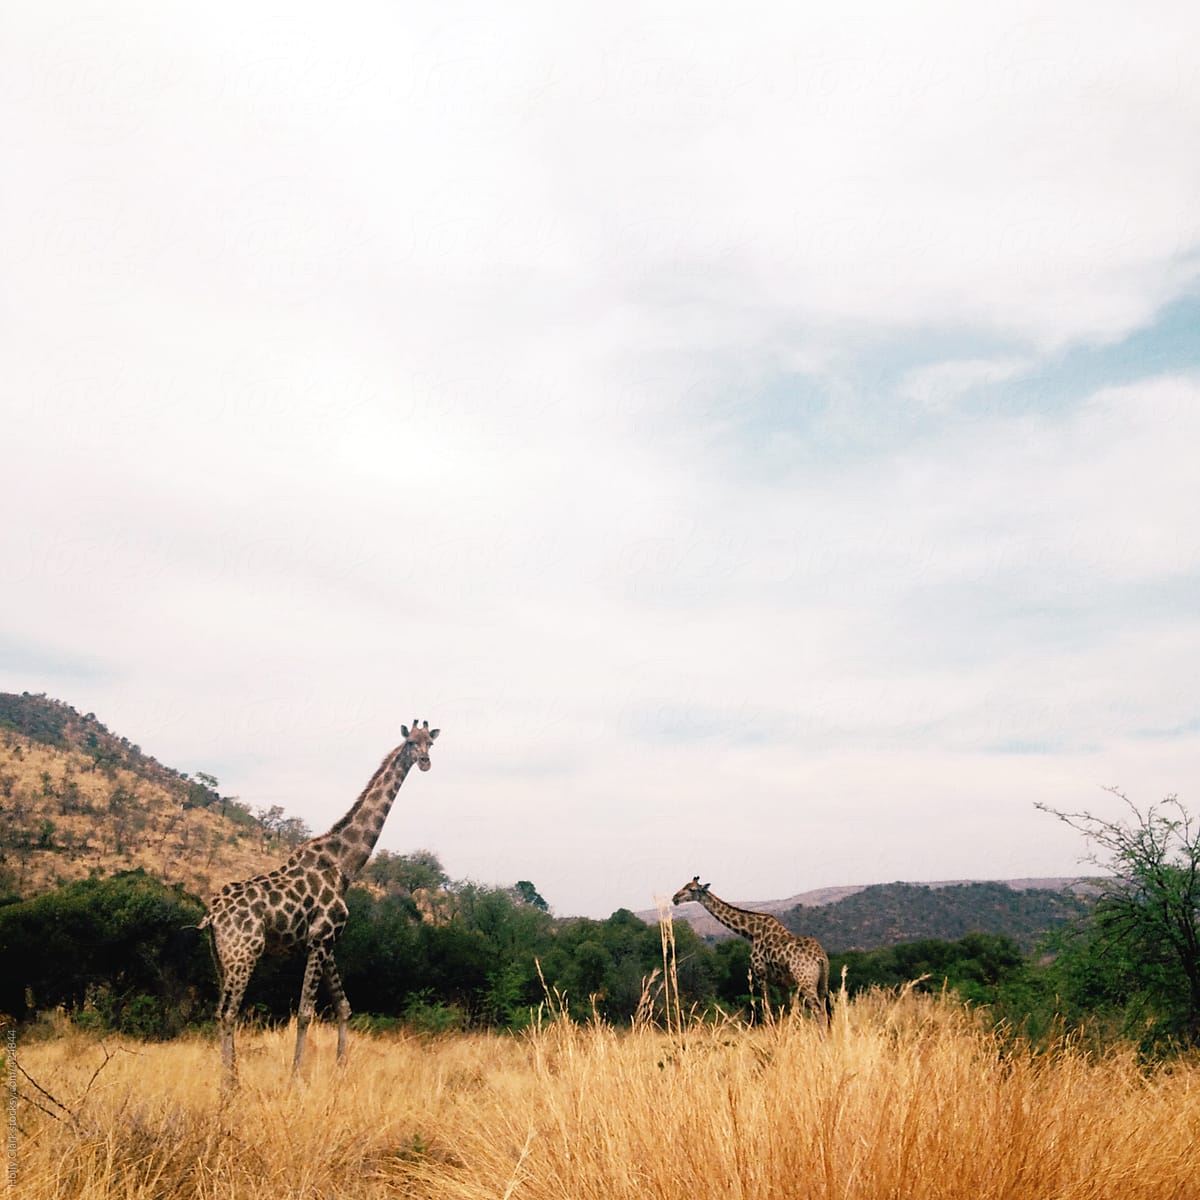 Two giraffes walk across African field below cloudy sky